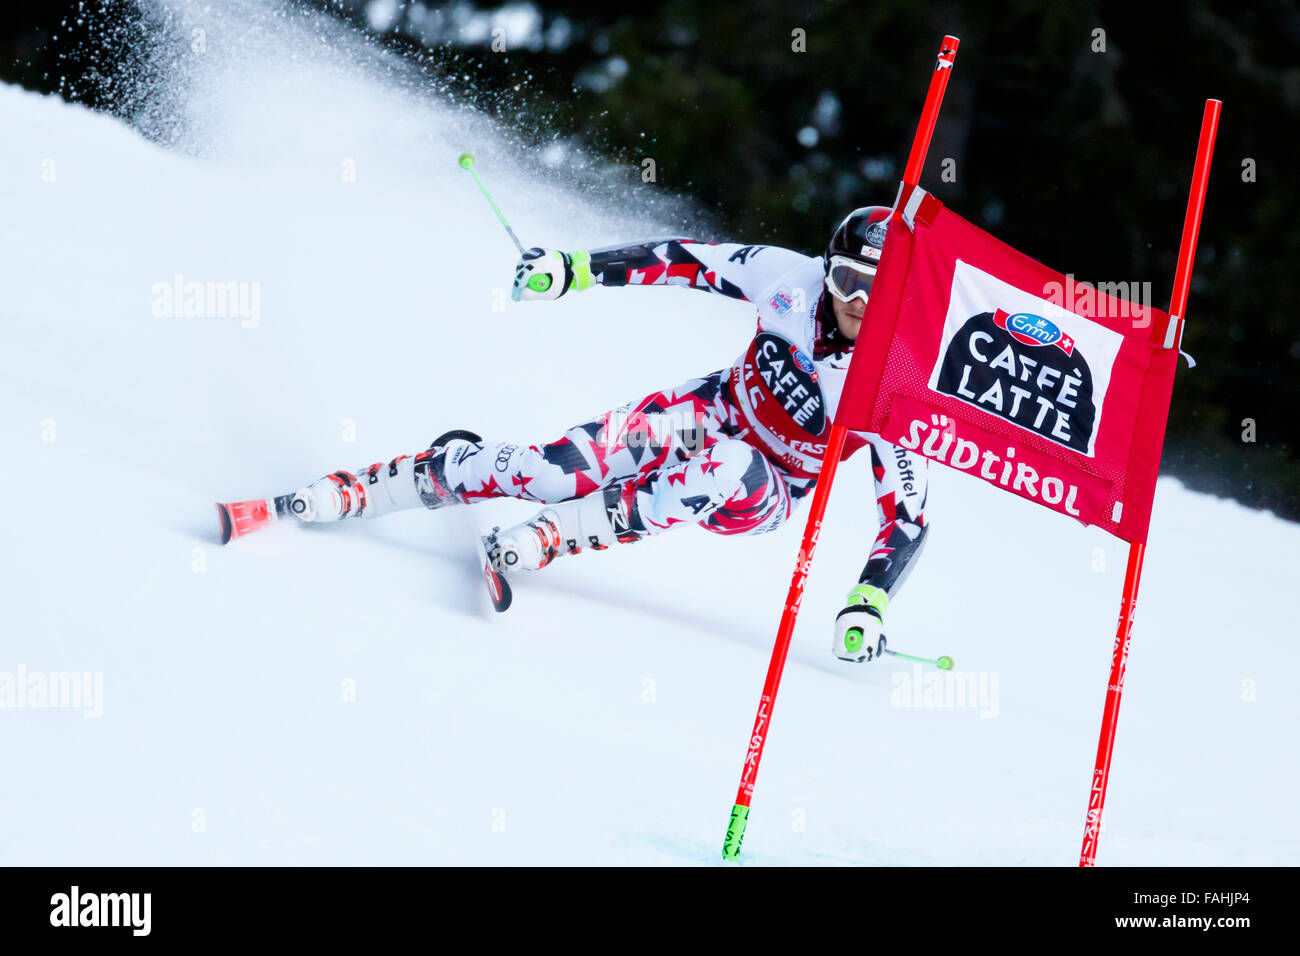 Alta Badia, Italia el 20 de diciembre de 2015. Christian HIRSCHBUEHL (Aut) compitiendo en el Audi Fis de la Copa del Mundo de Esquí Alpino Slalom Gigante de hombres en la Gran Risa curso en la cordillera de dolomita. Foto de stock